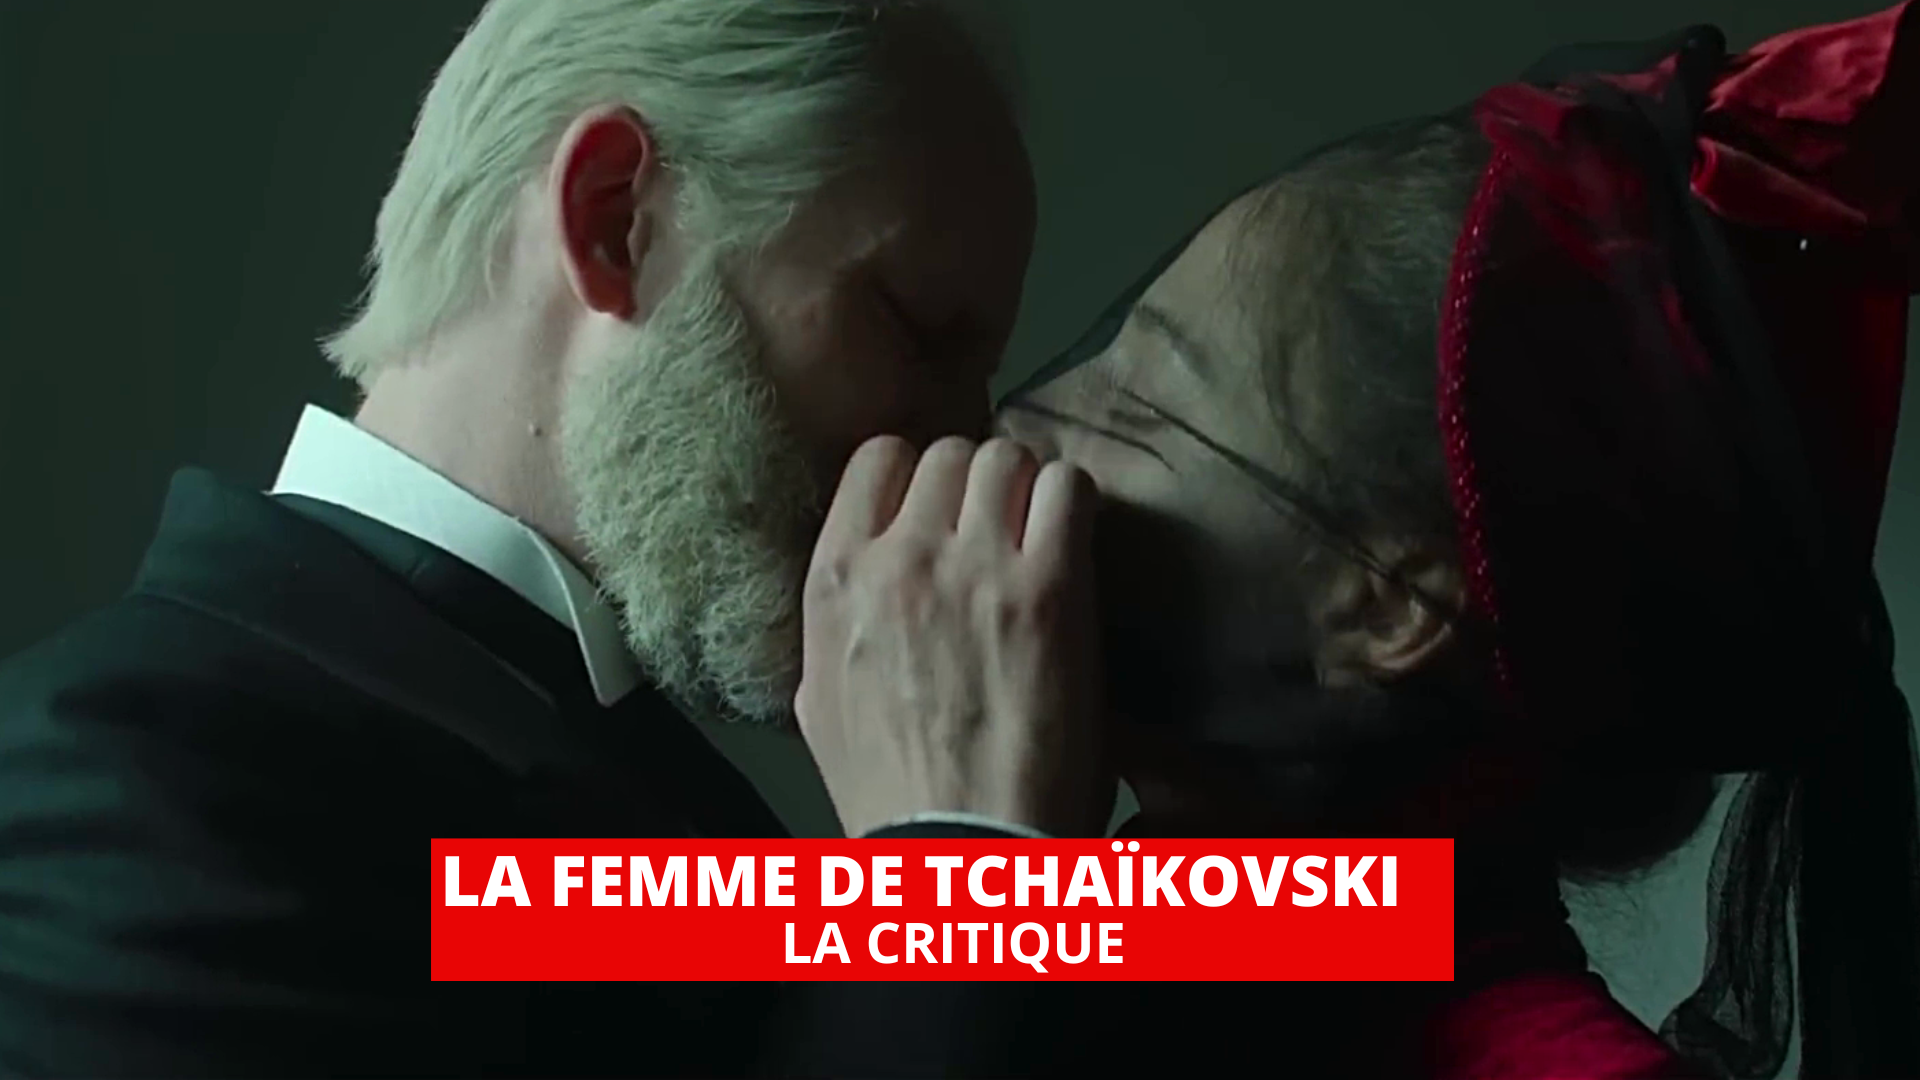 La Femme de Tchaïkovski : une tragique passion amoureuse